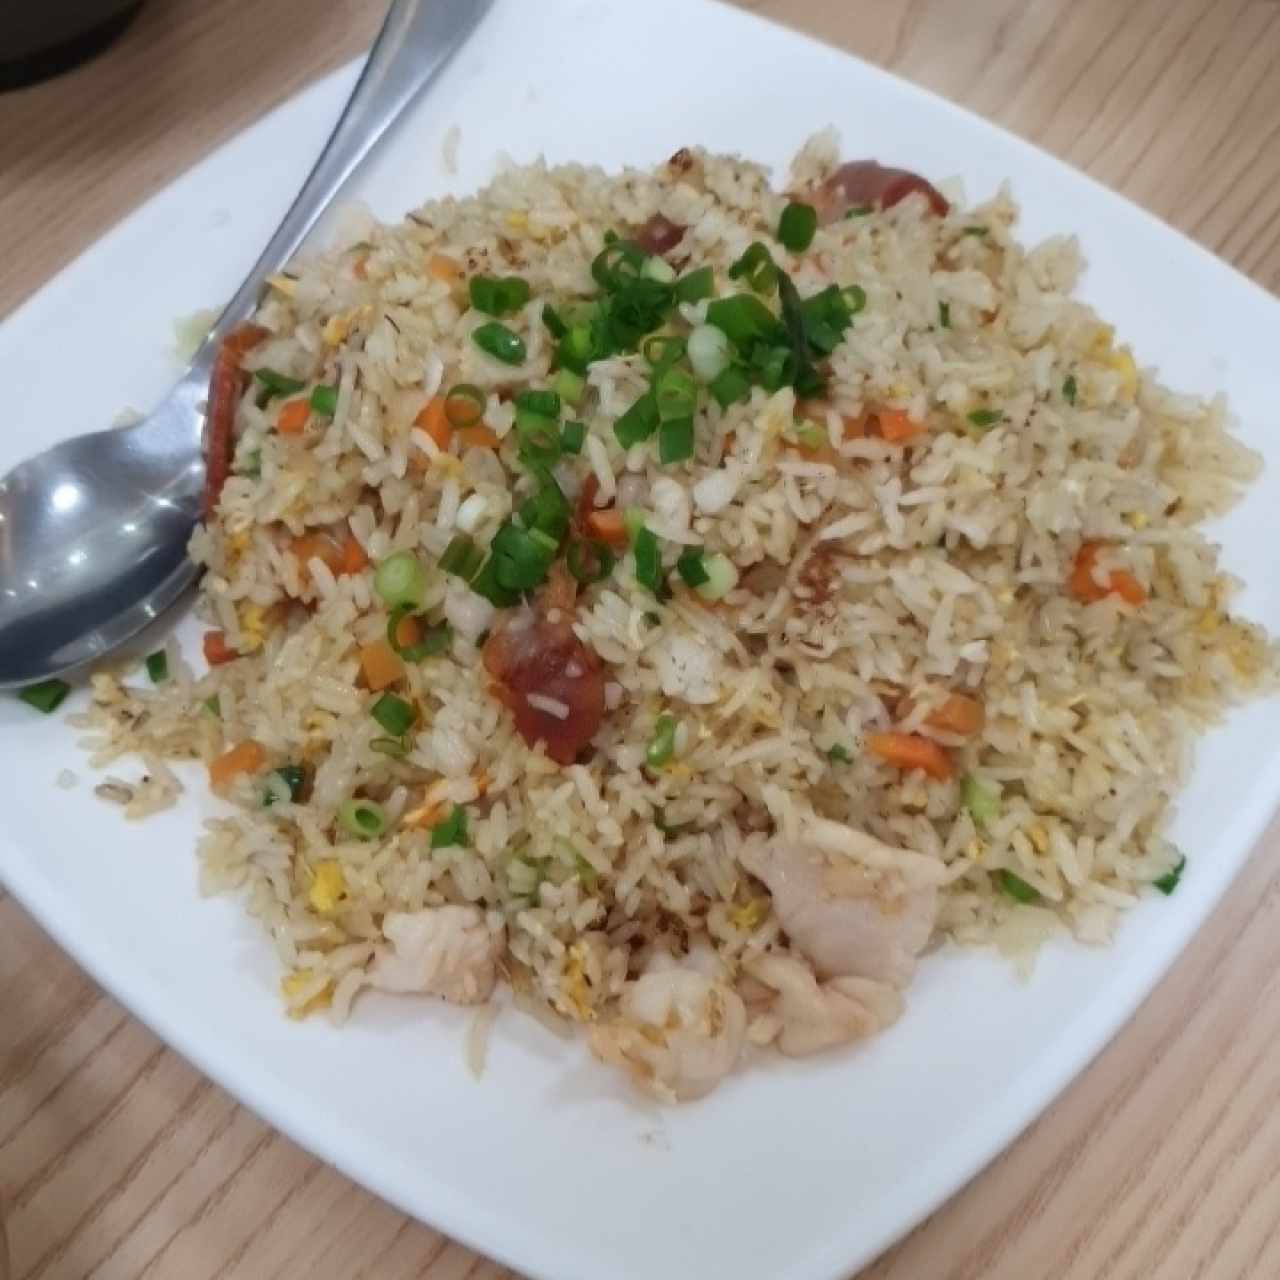 arroz yong chao